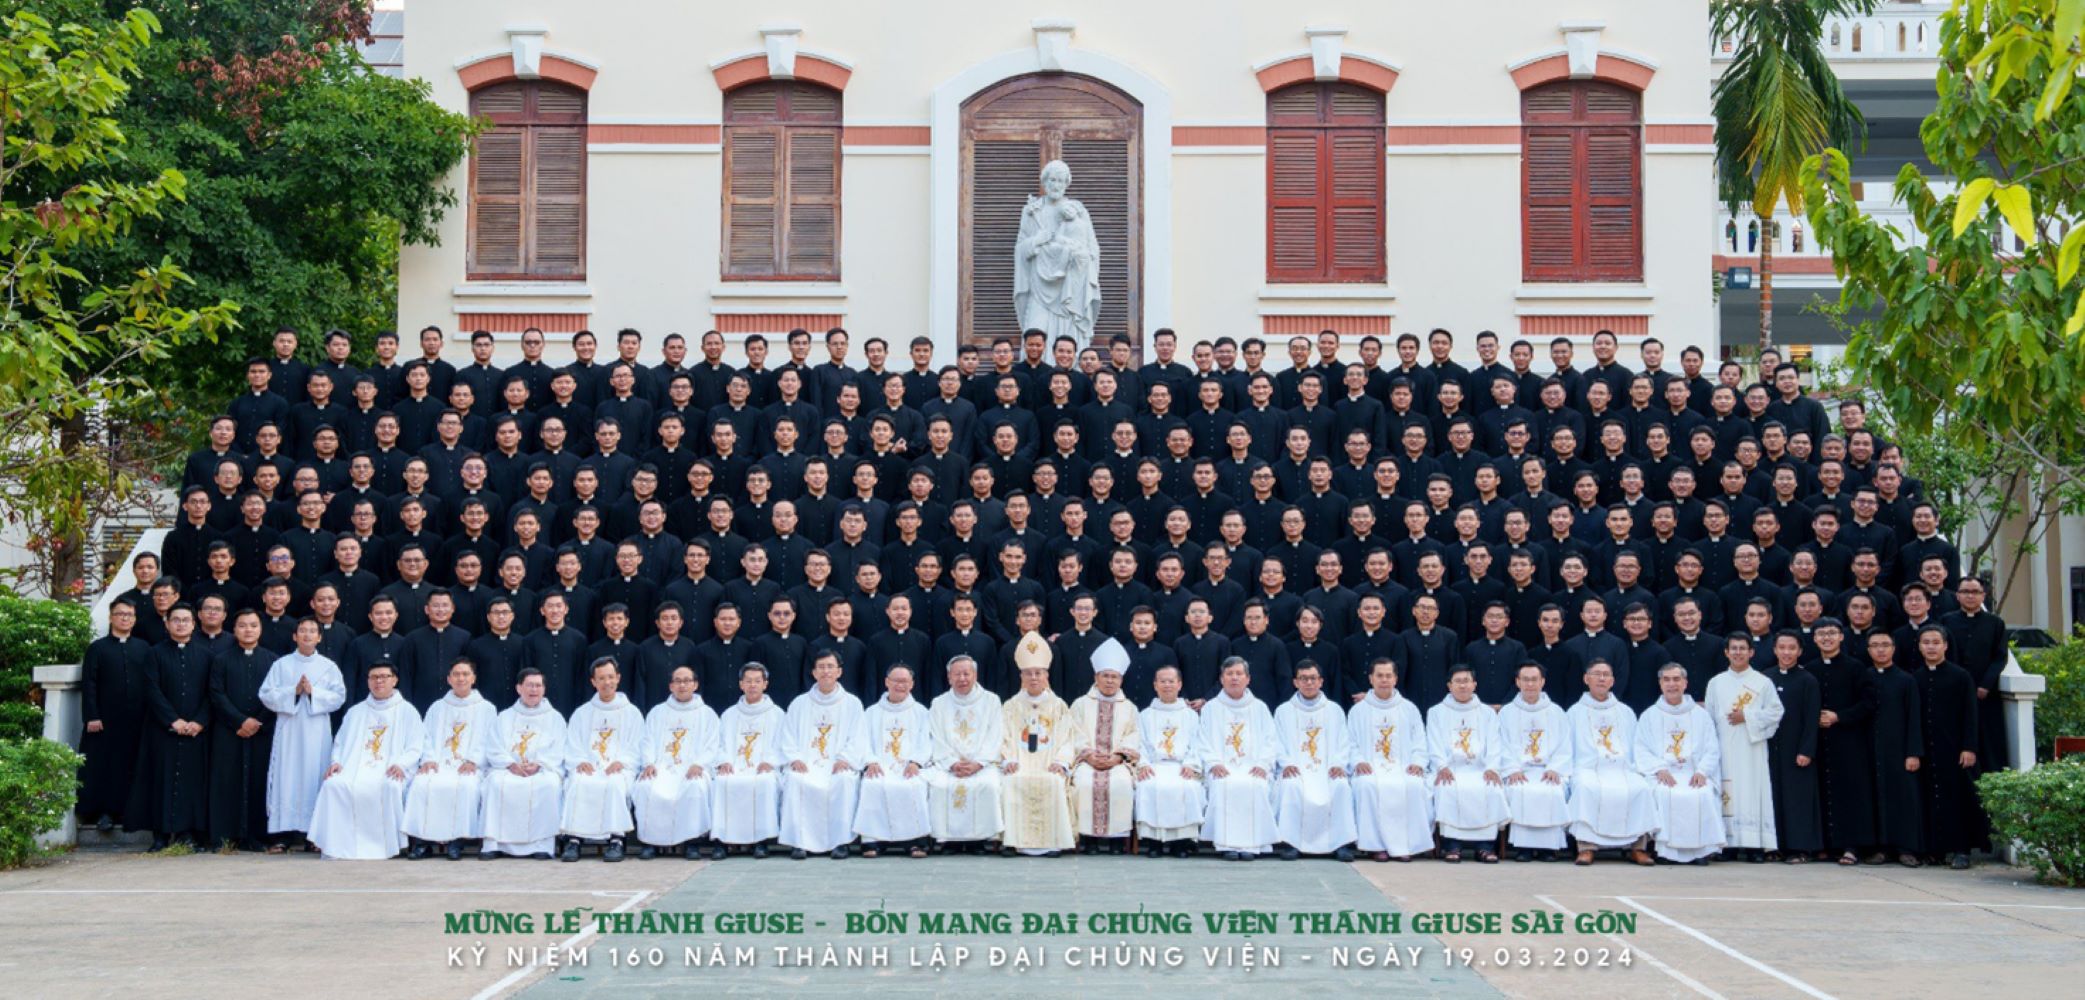 Đại Chủng Viện Thánh Giuse Sài Gòn: Mừng Lễ Thánh Giuse - Bổn Mạng Đại Chủng Viện